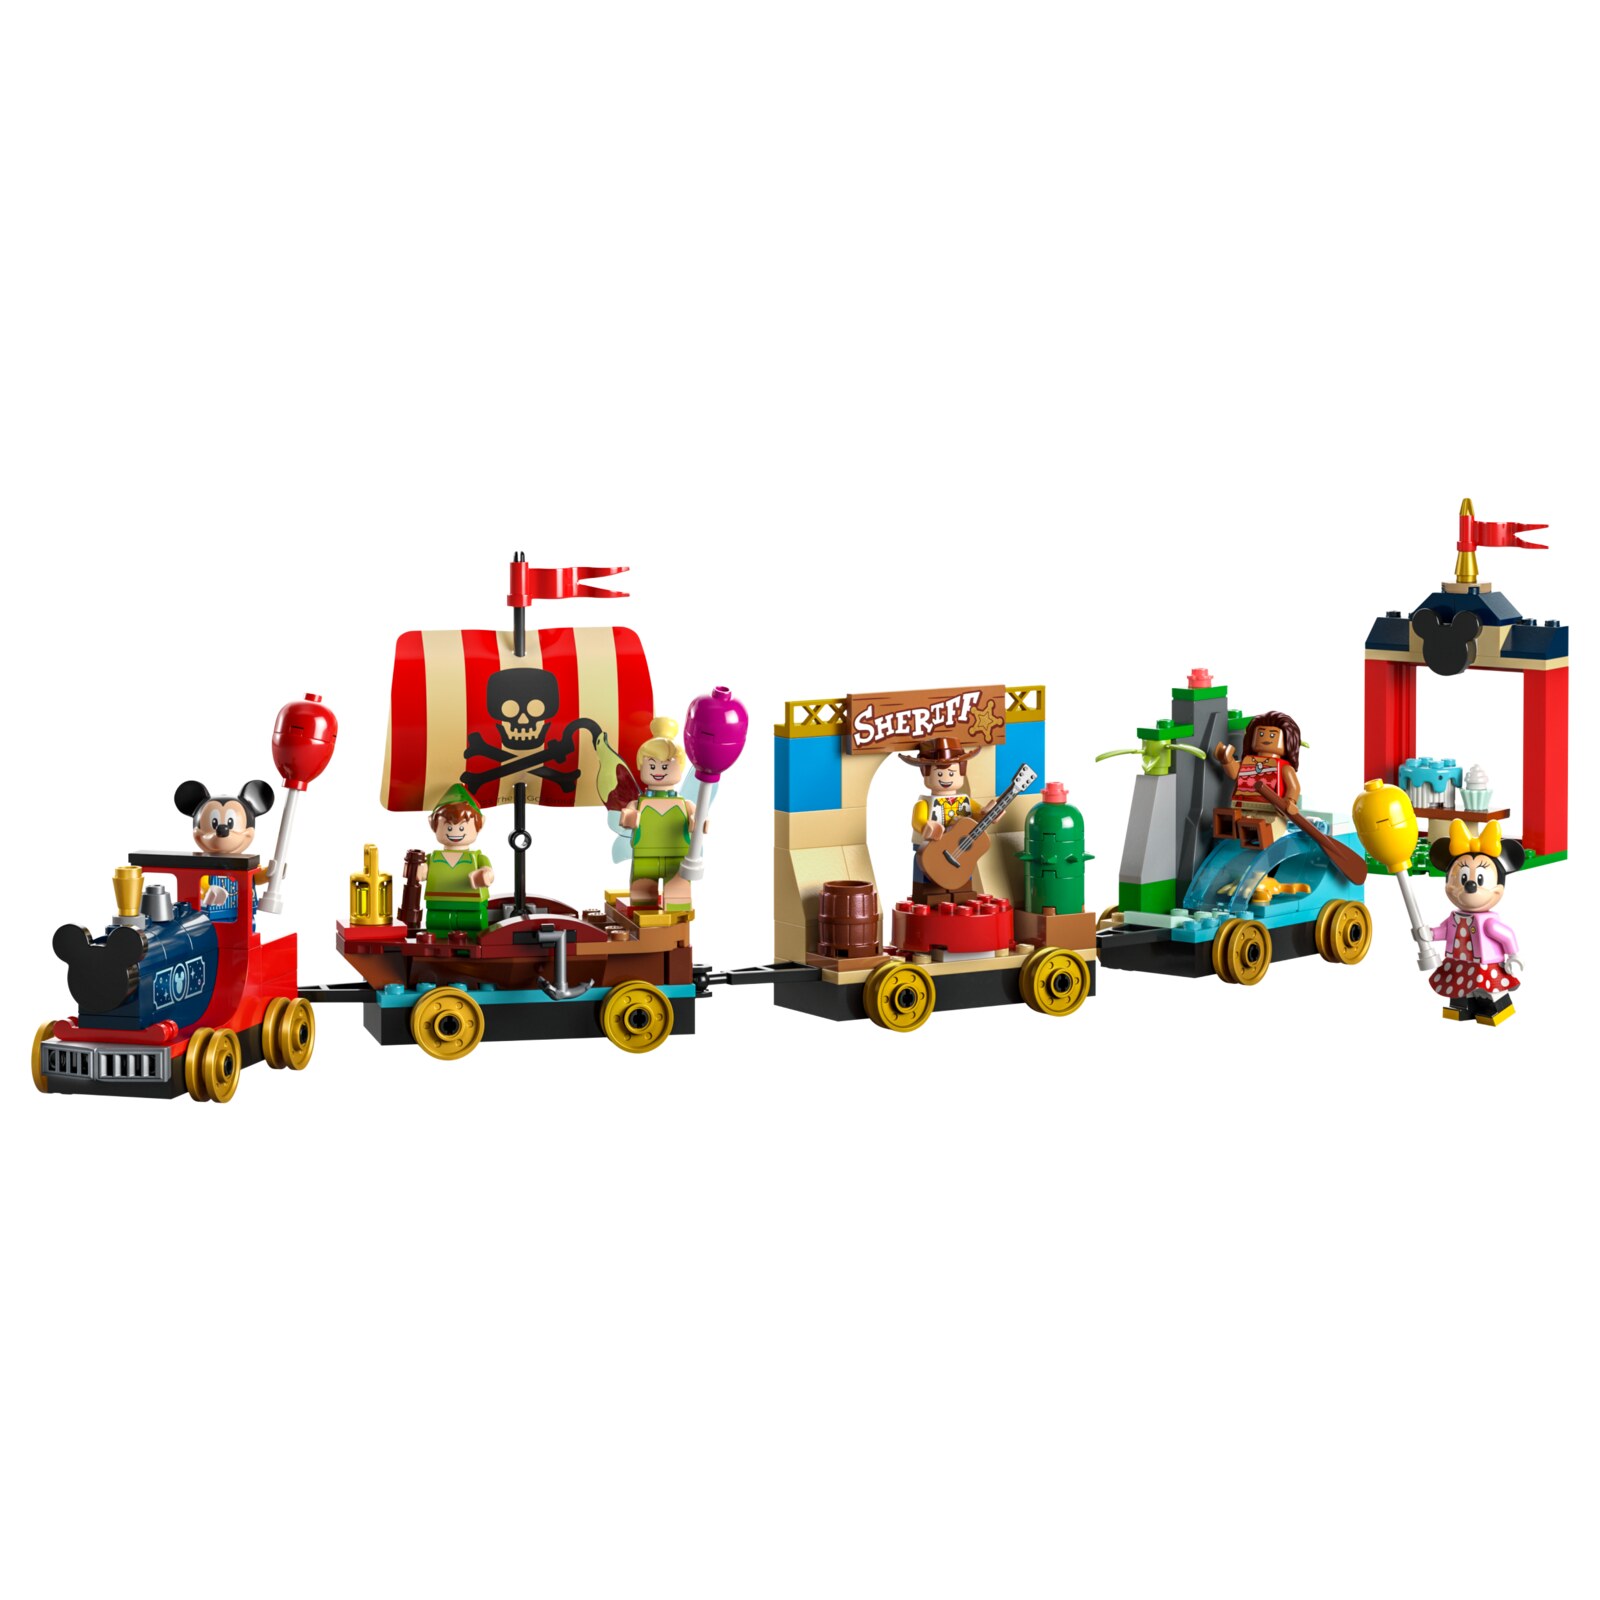 Конструктор LEGO Disney Праздничный поезд Диснея, 200 деталей, 43212 конструктор smoneo обучающий поезд 65 деталей